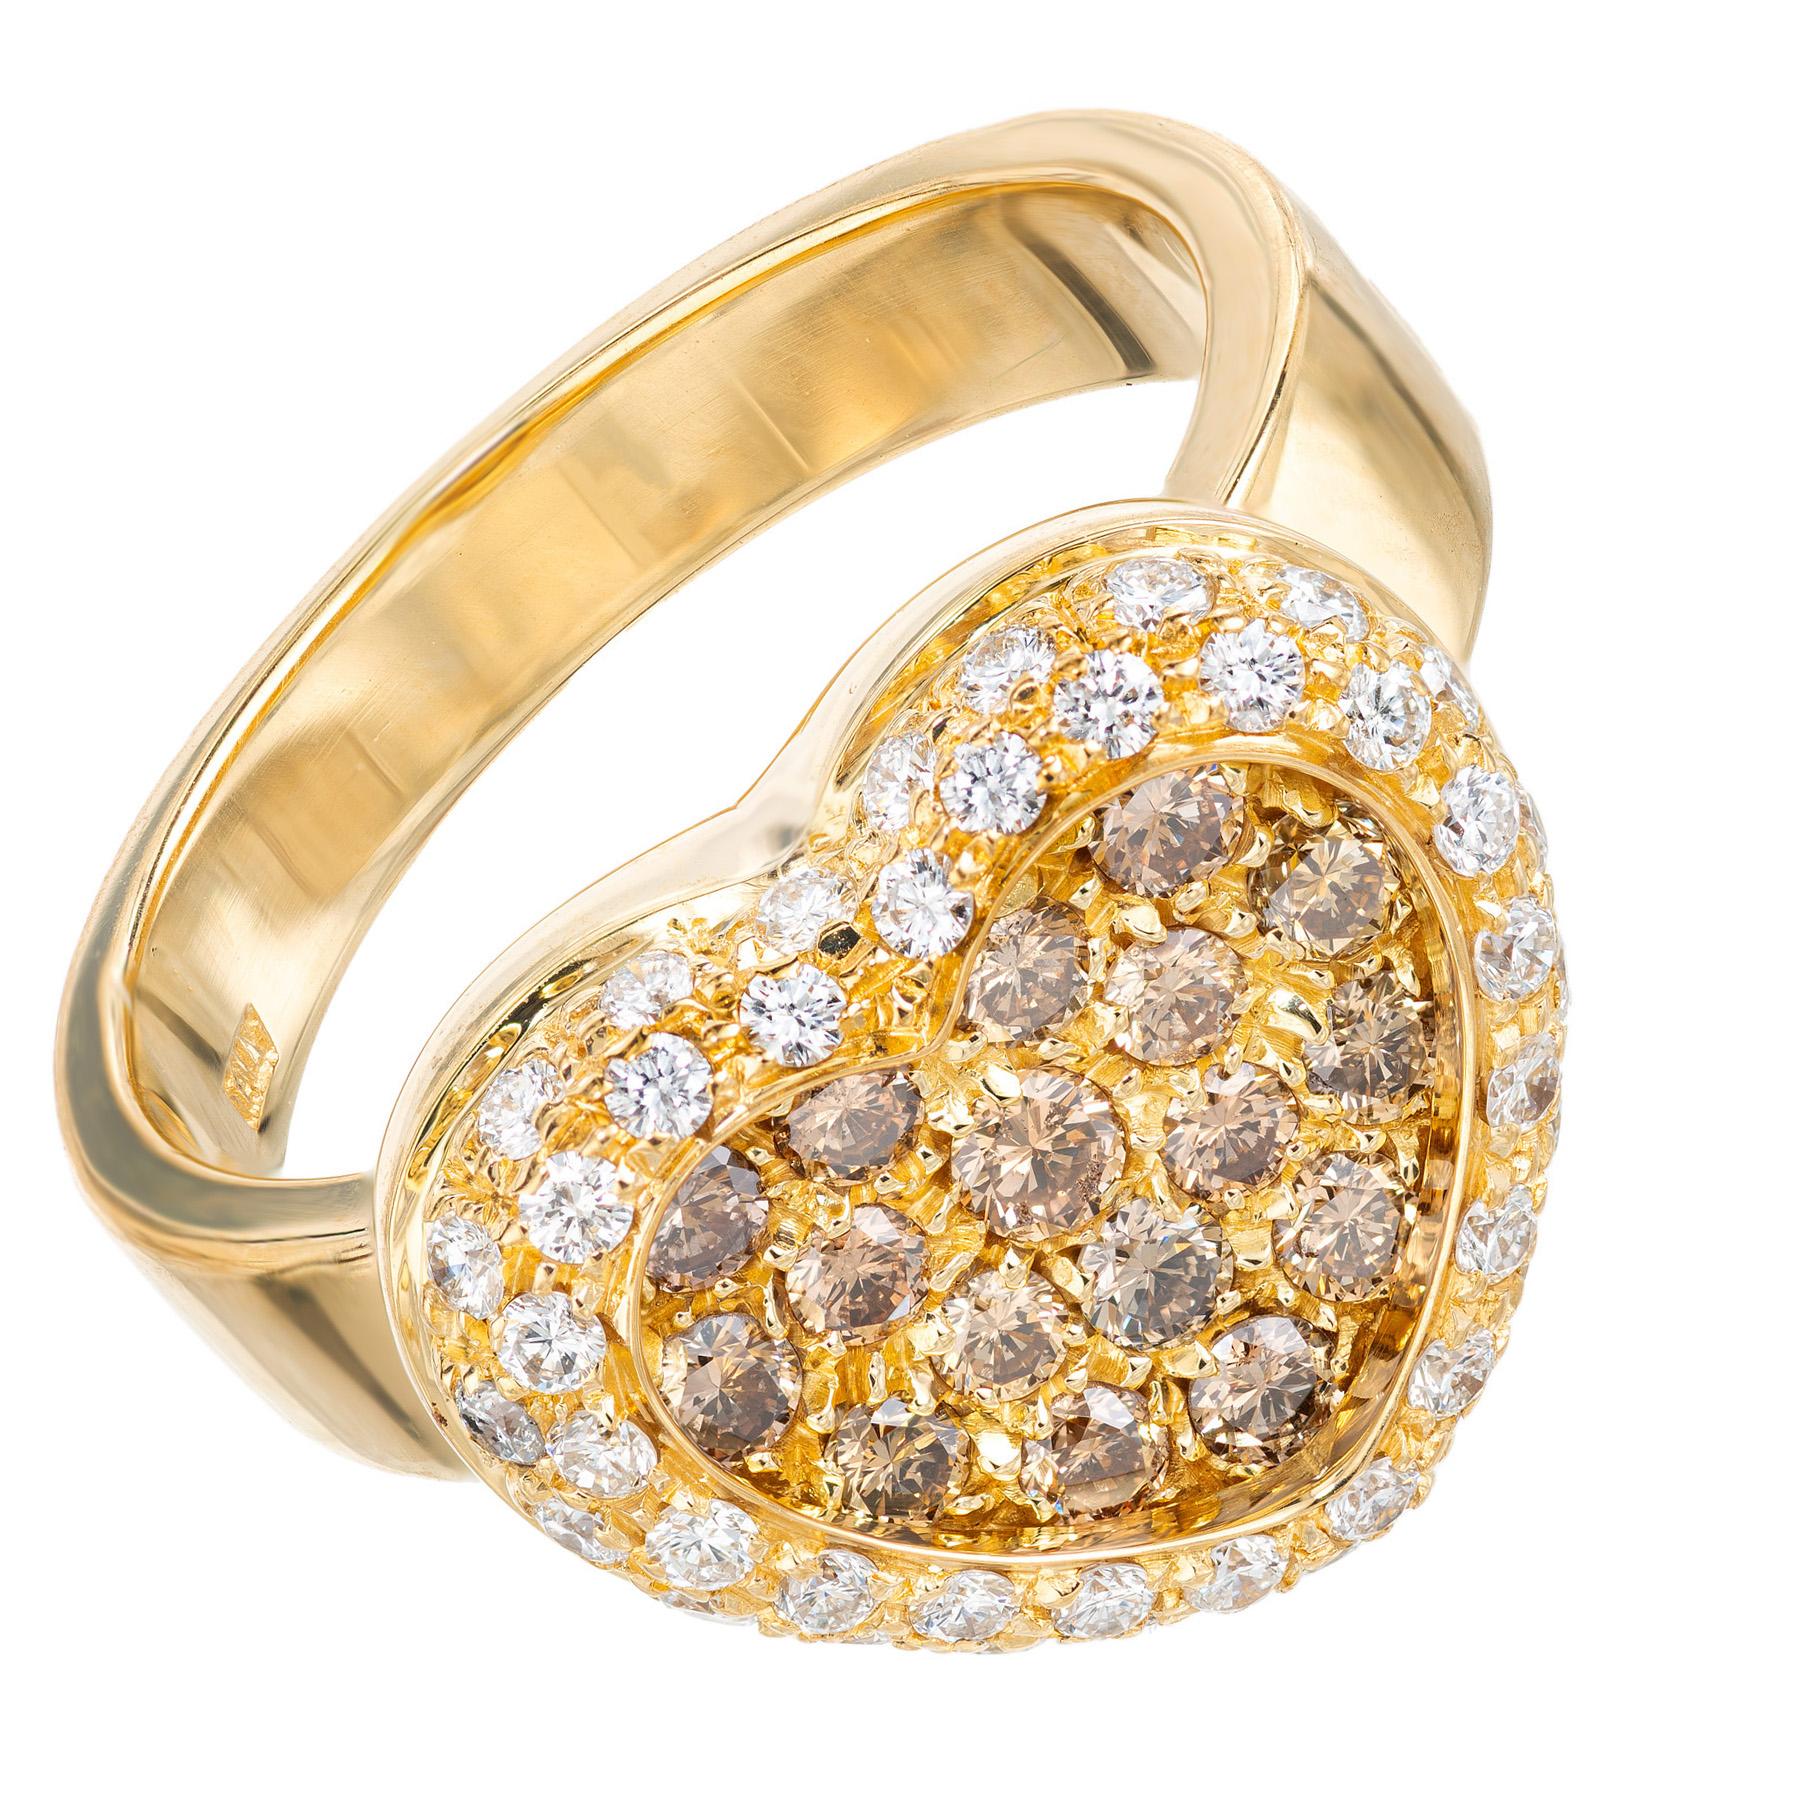 Magnifique bague de cœur en or jaune 18 carats avec 17 diamants ronds de couleur cognac accentués par un halo de 42 diamants blancs ronds de taille brillant. Le contraste entre les diamants de couleurs différentes sertis dans de l'or jaune crée un